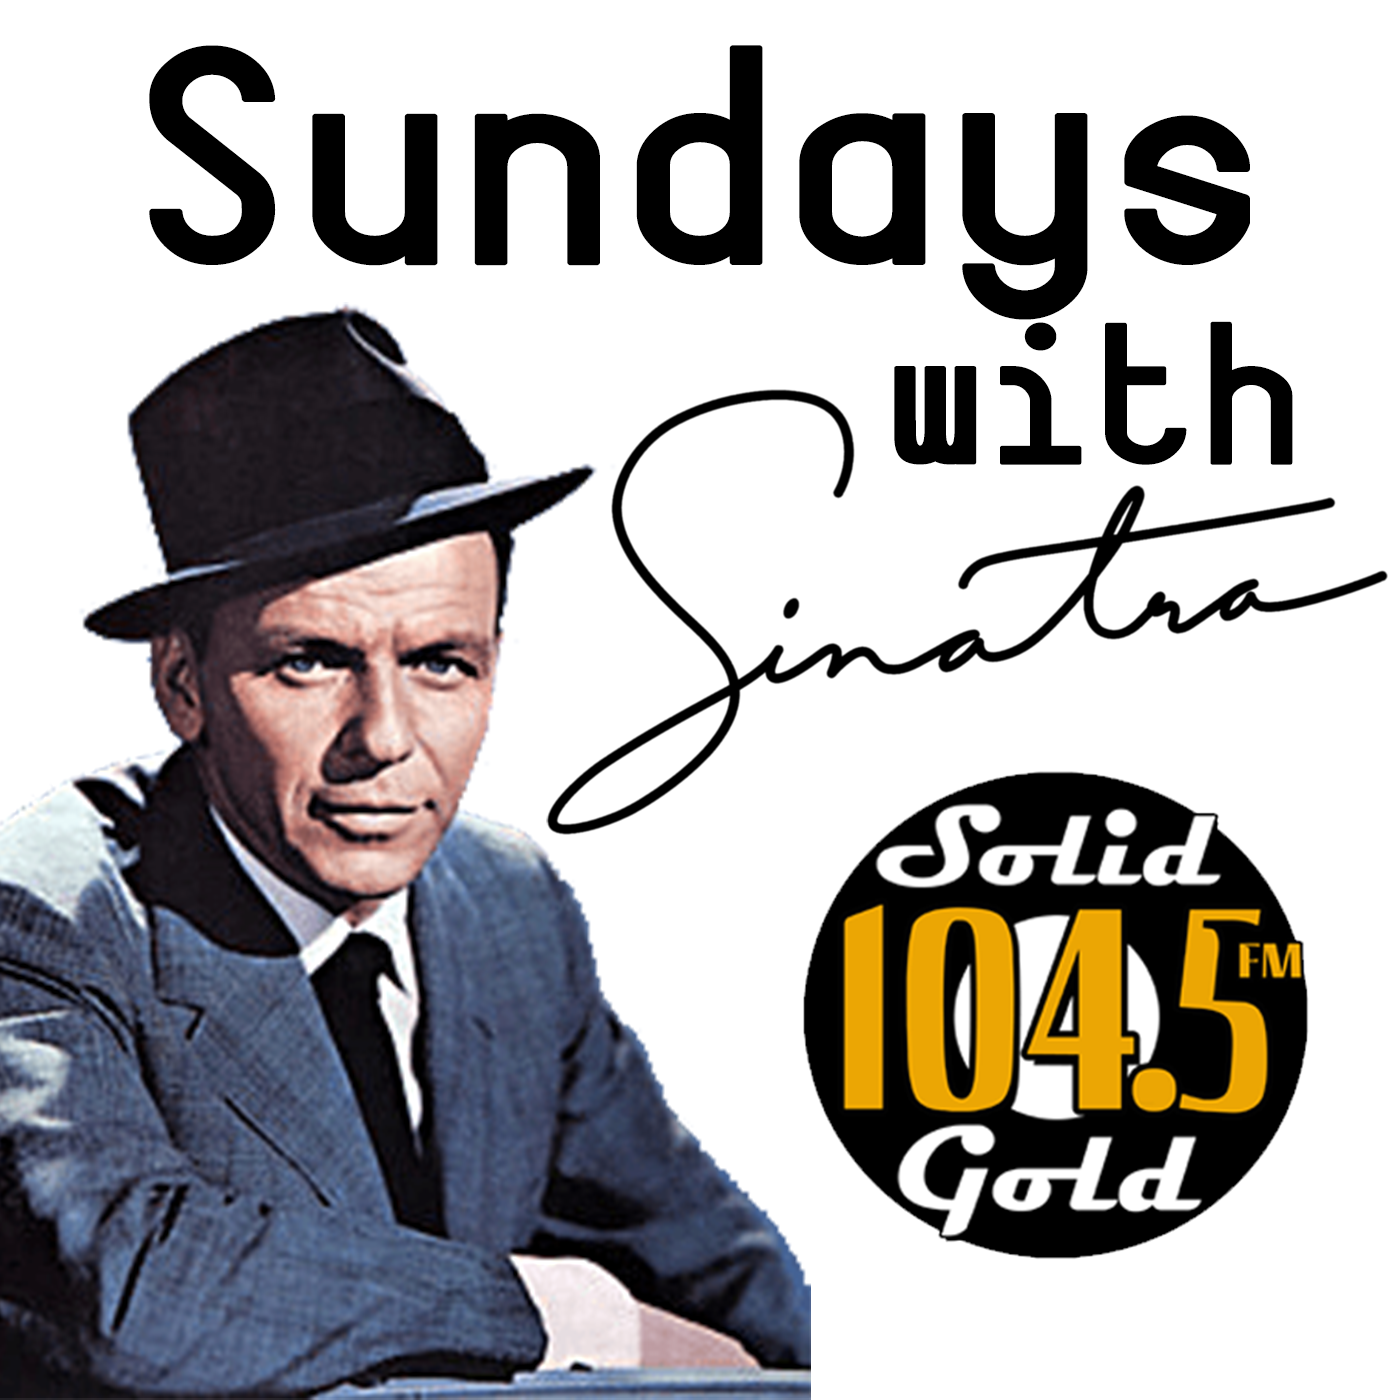 Sundays with Sinatra